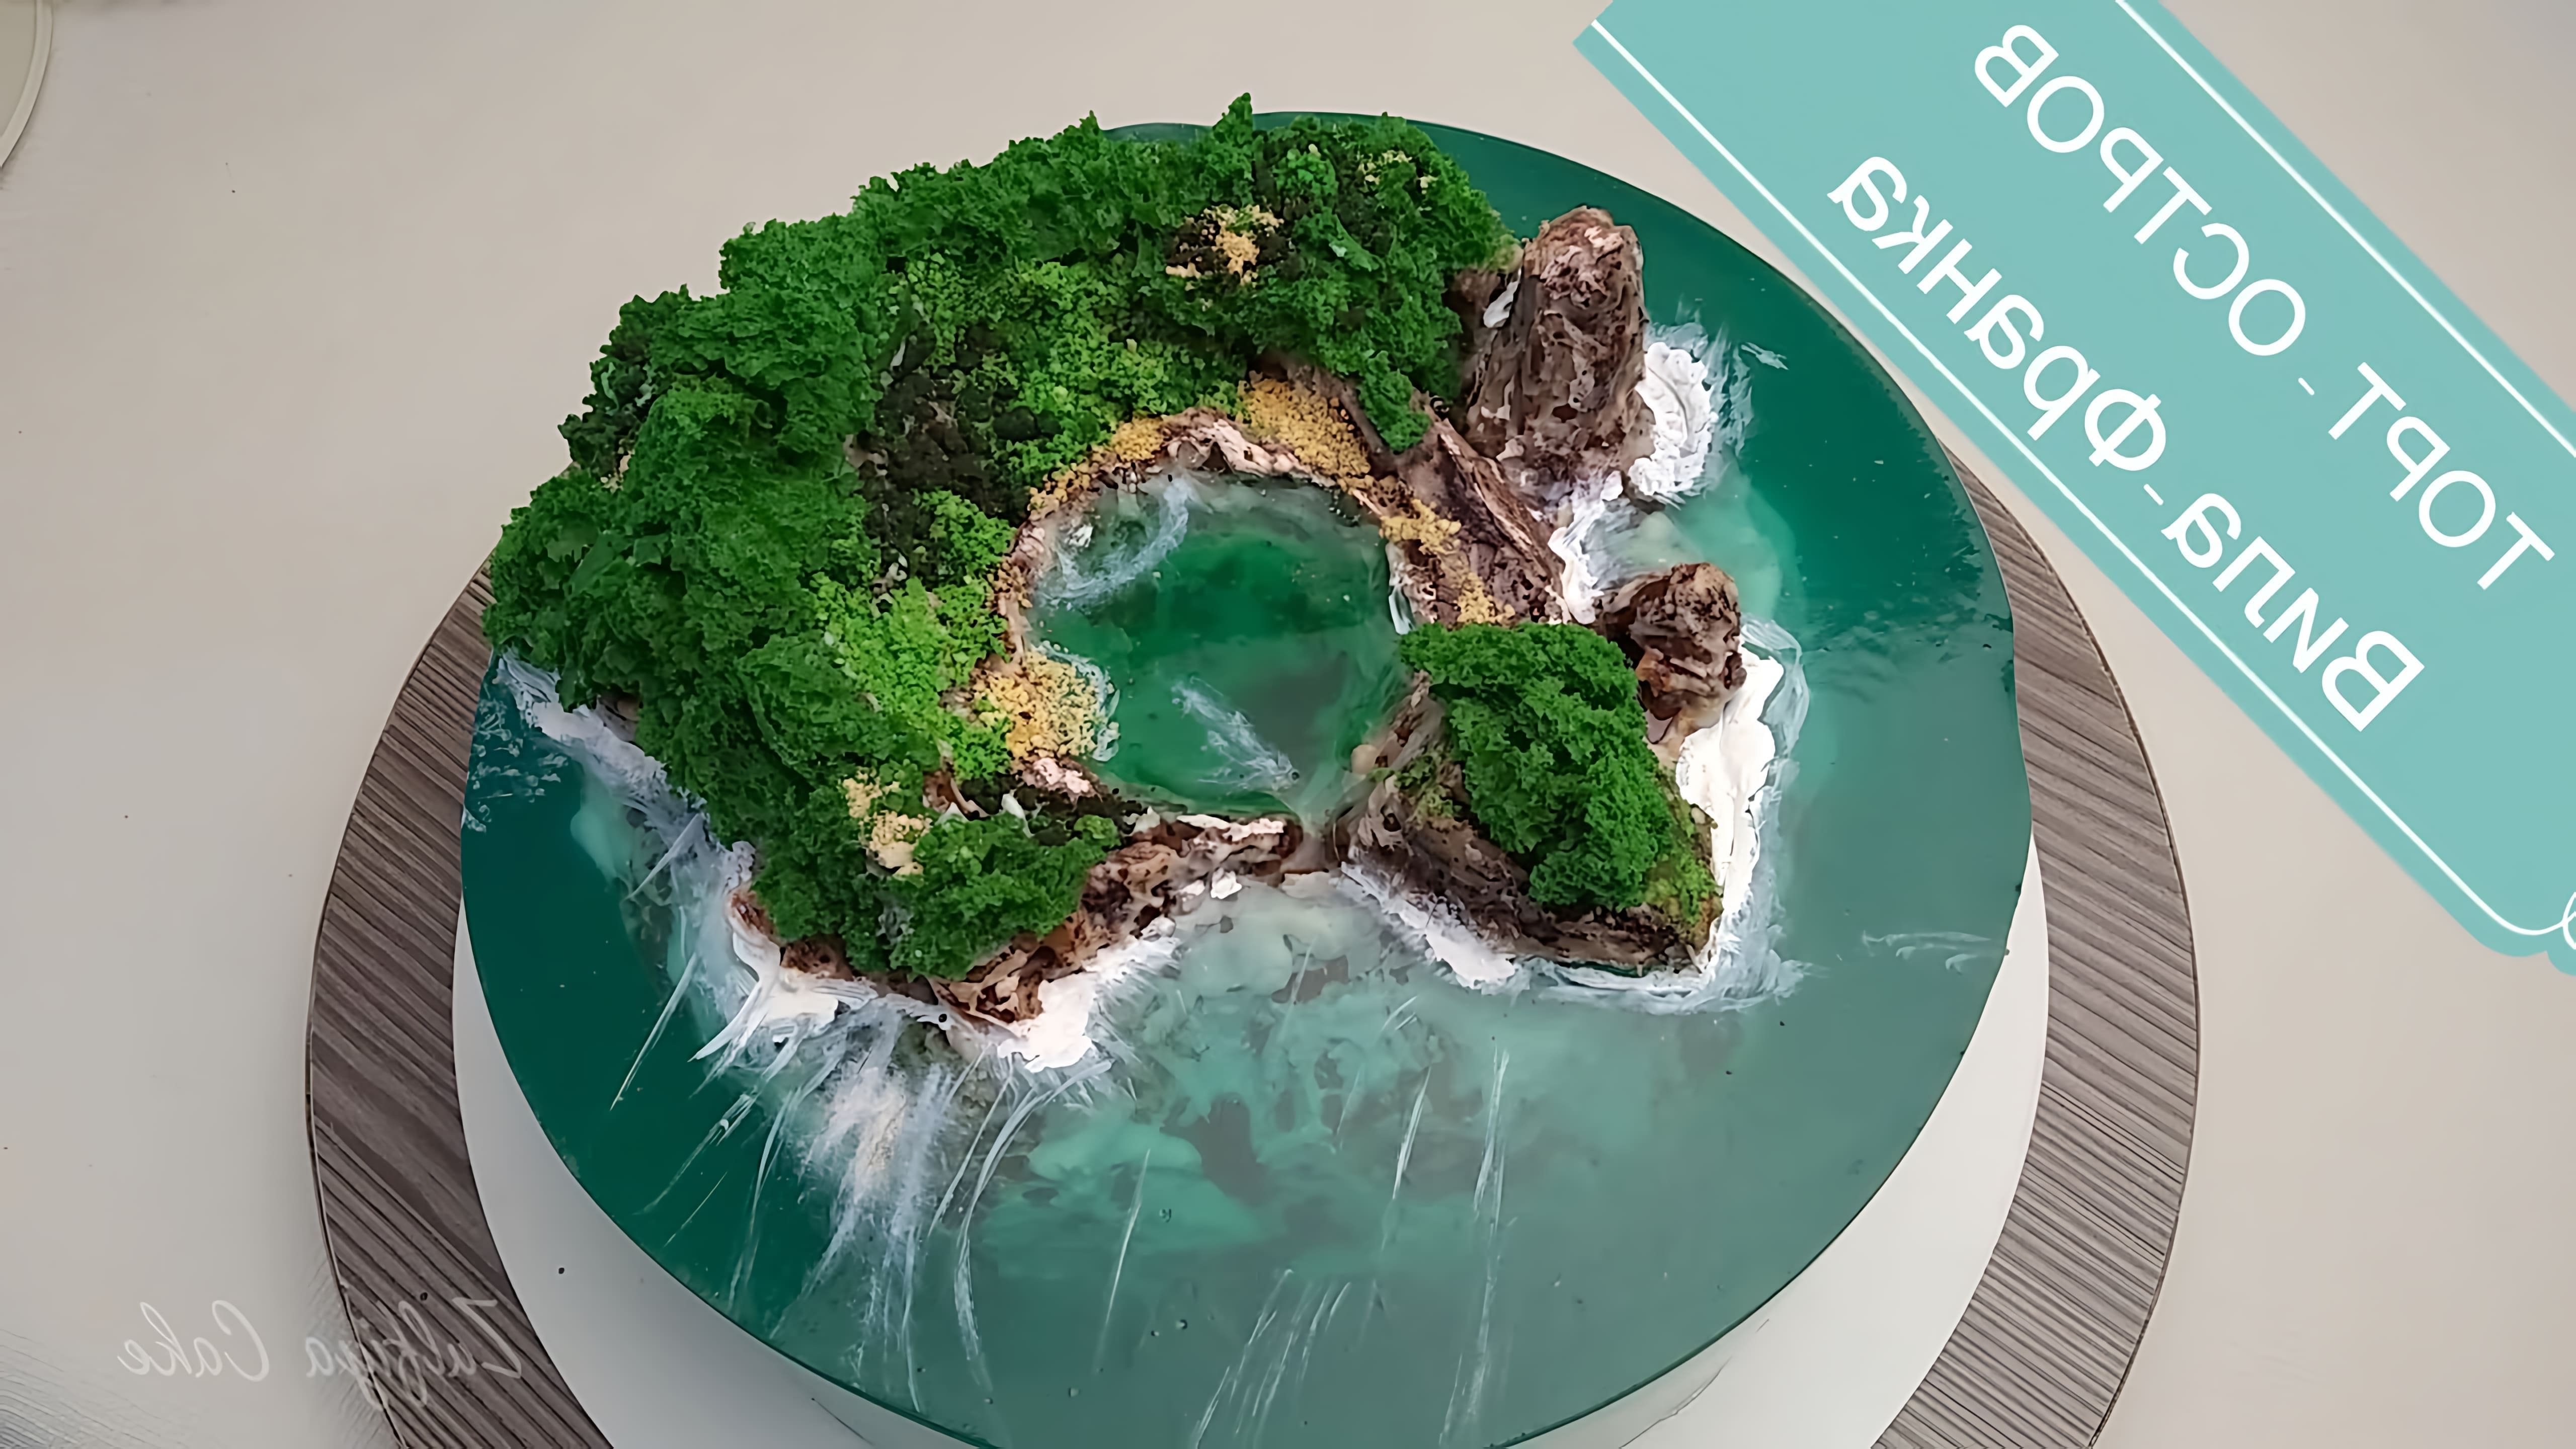 В этом видео демонстрируется процесс создания торта "Остров Вила-Франка" на Азорских островах